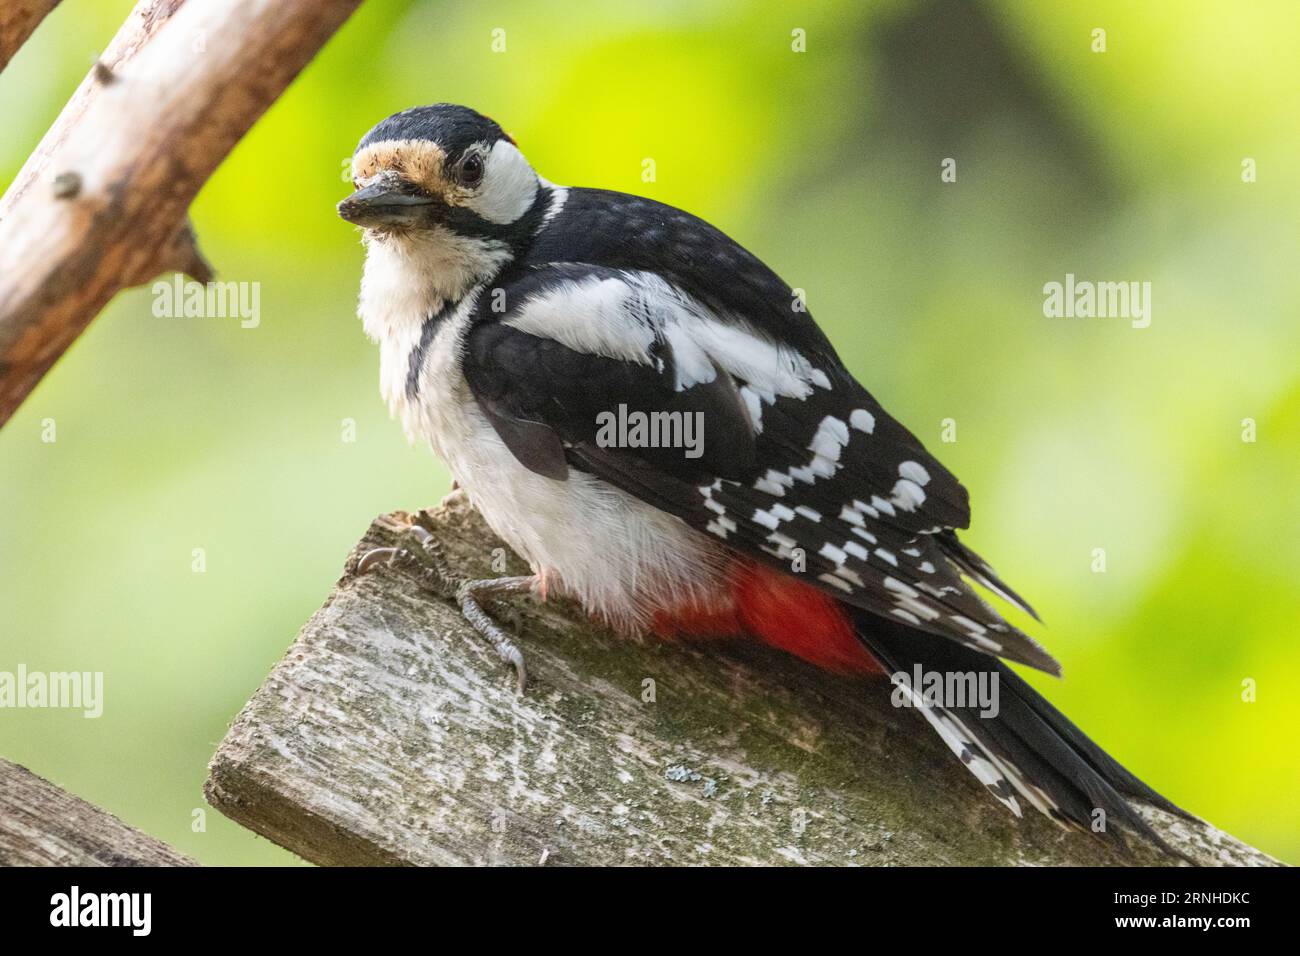 A woodpecker in Helsinki, Finland Stock Photo